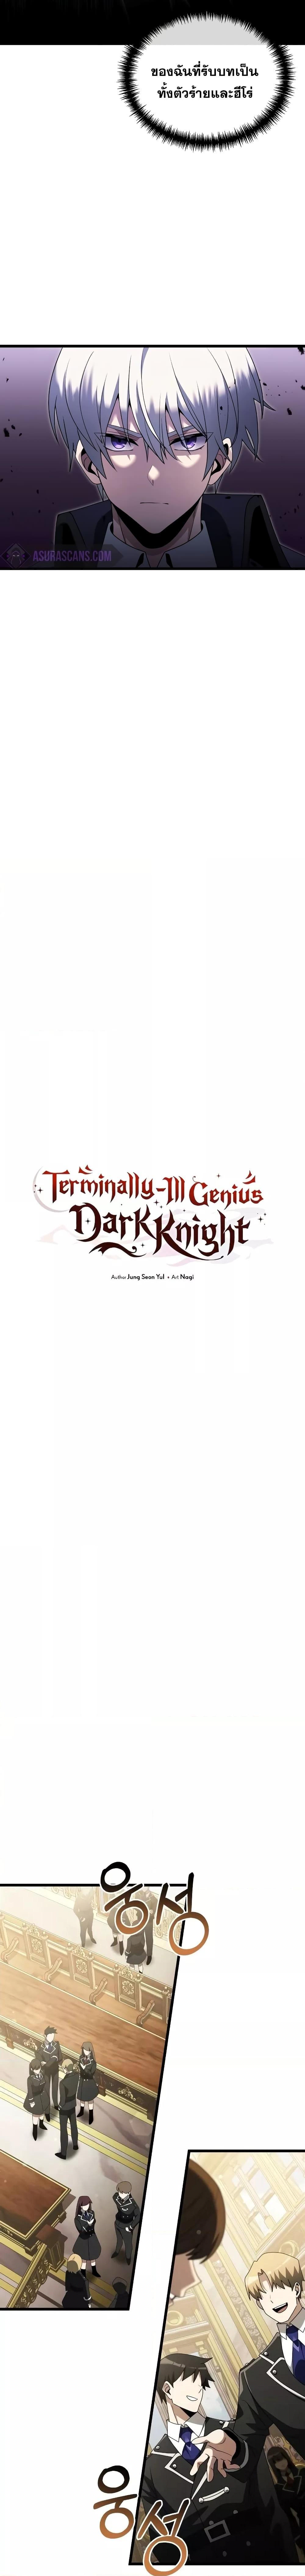 Terminally Ill Genius Dark Knight 49 07